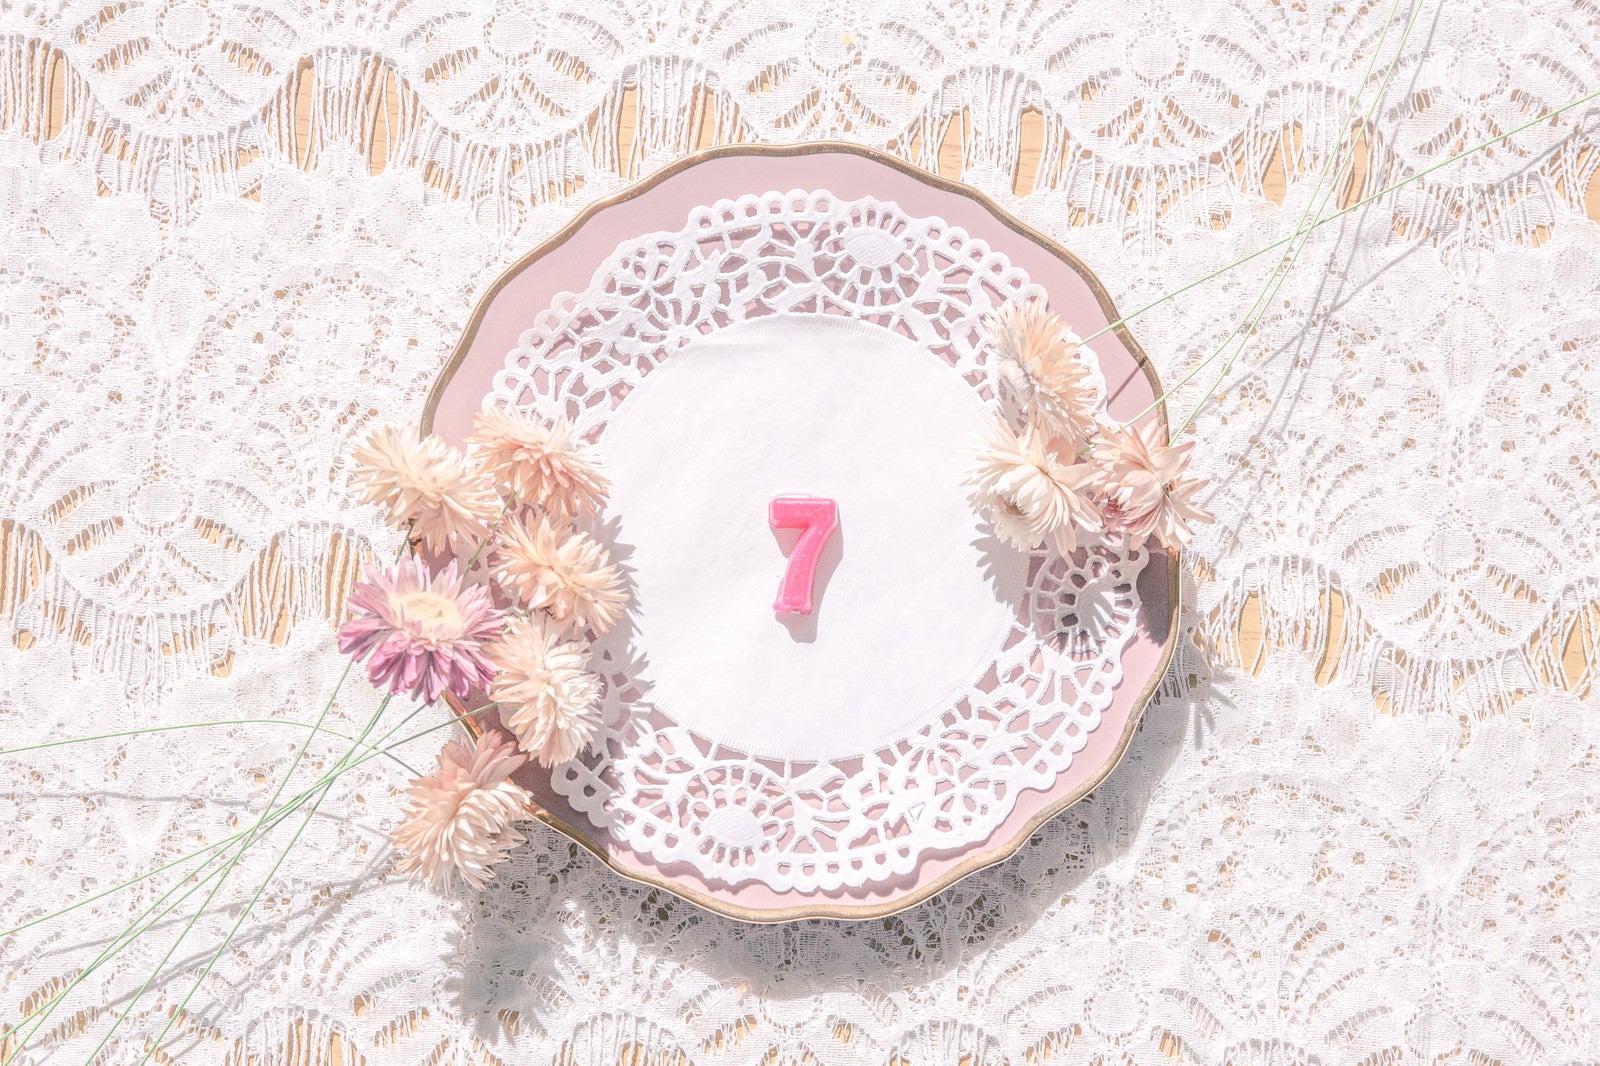 「アンティークなお皿と数字の「7」」の写真